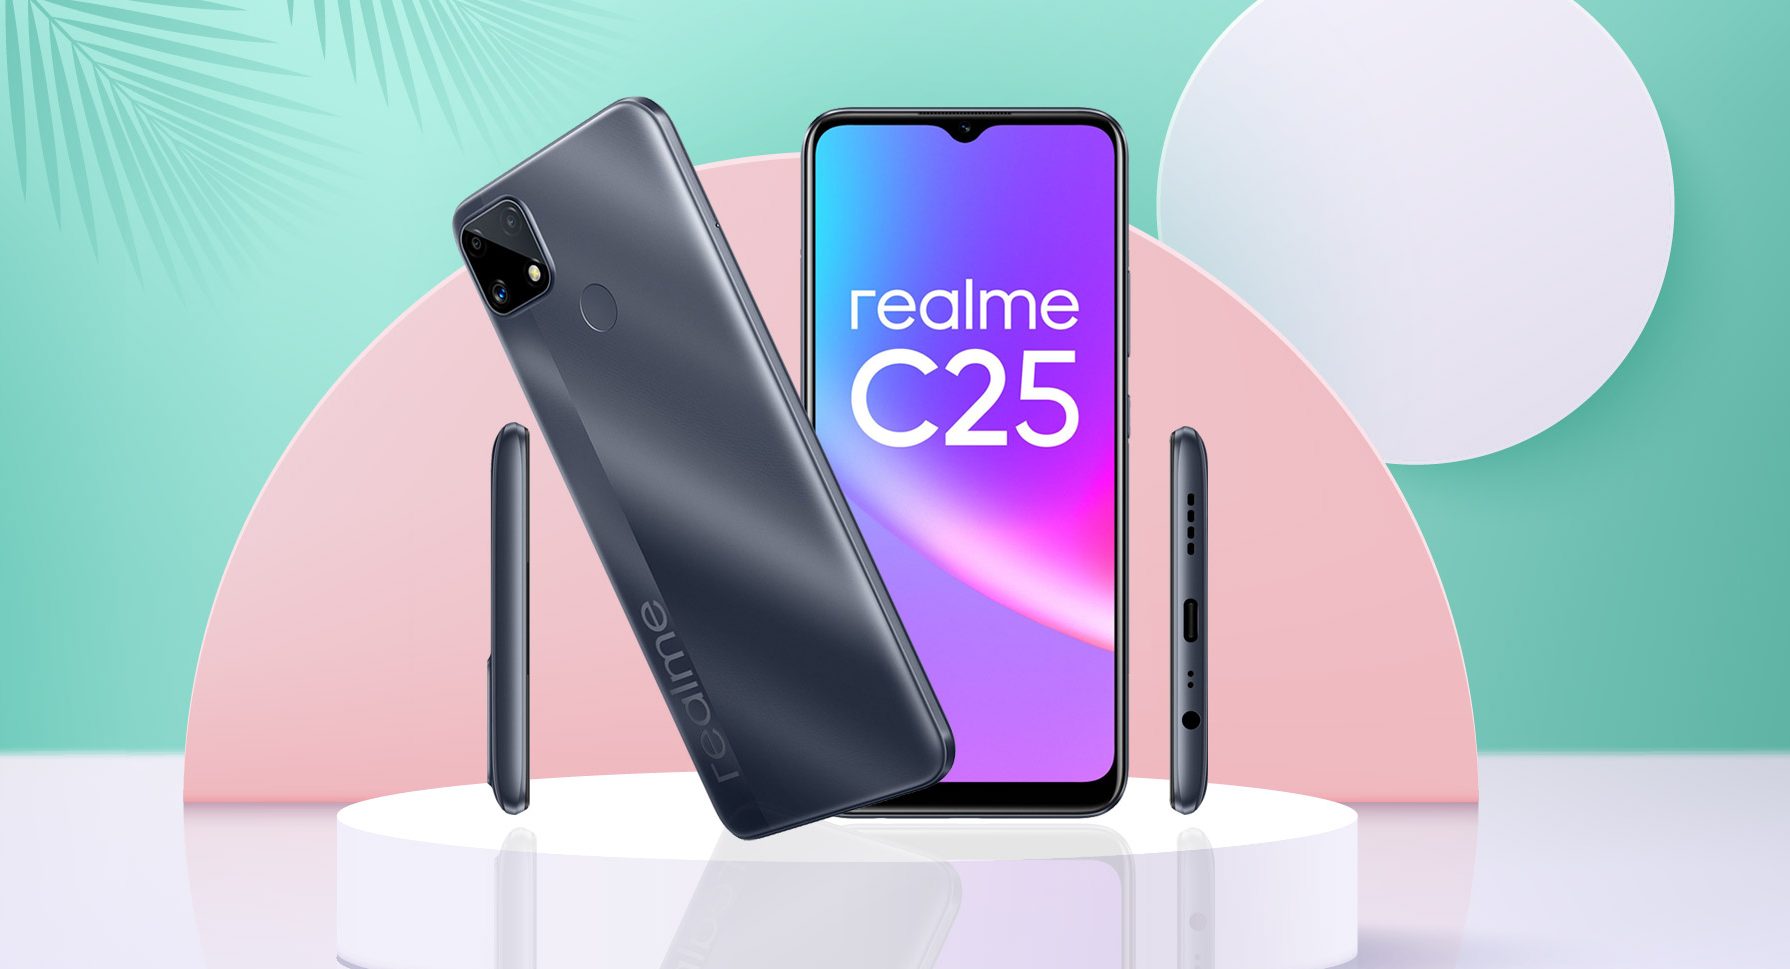 Realme chính thức ra mắt realme C25 tại Việt Nam giá 4.69 triệu đồng